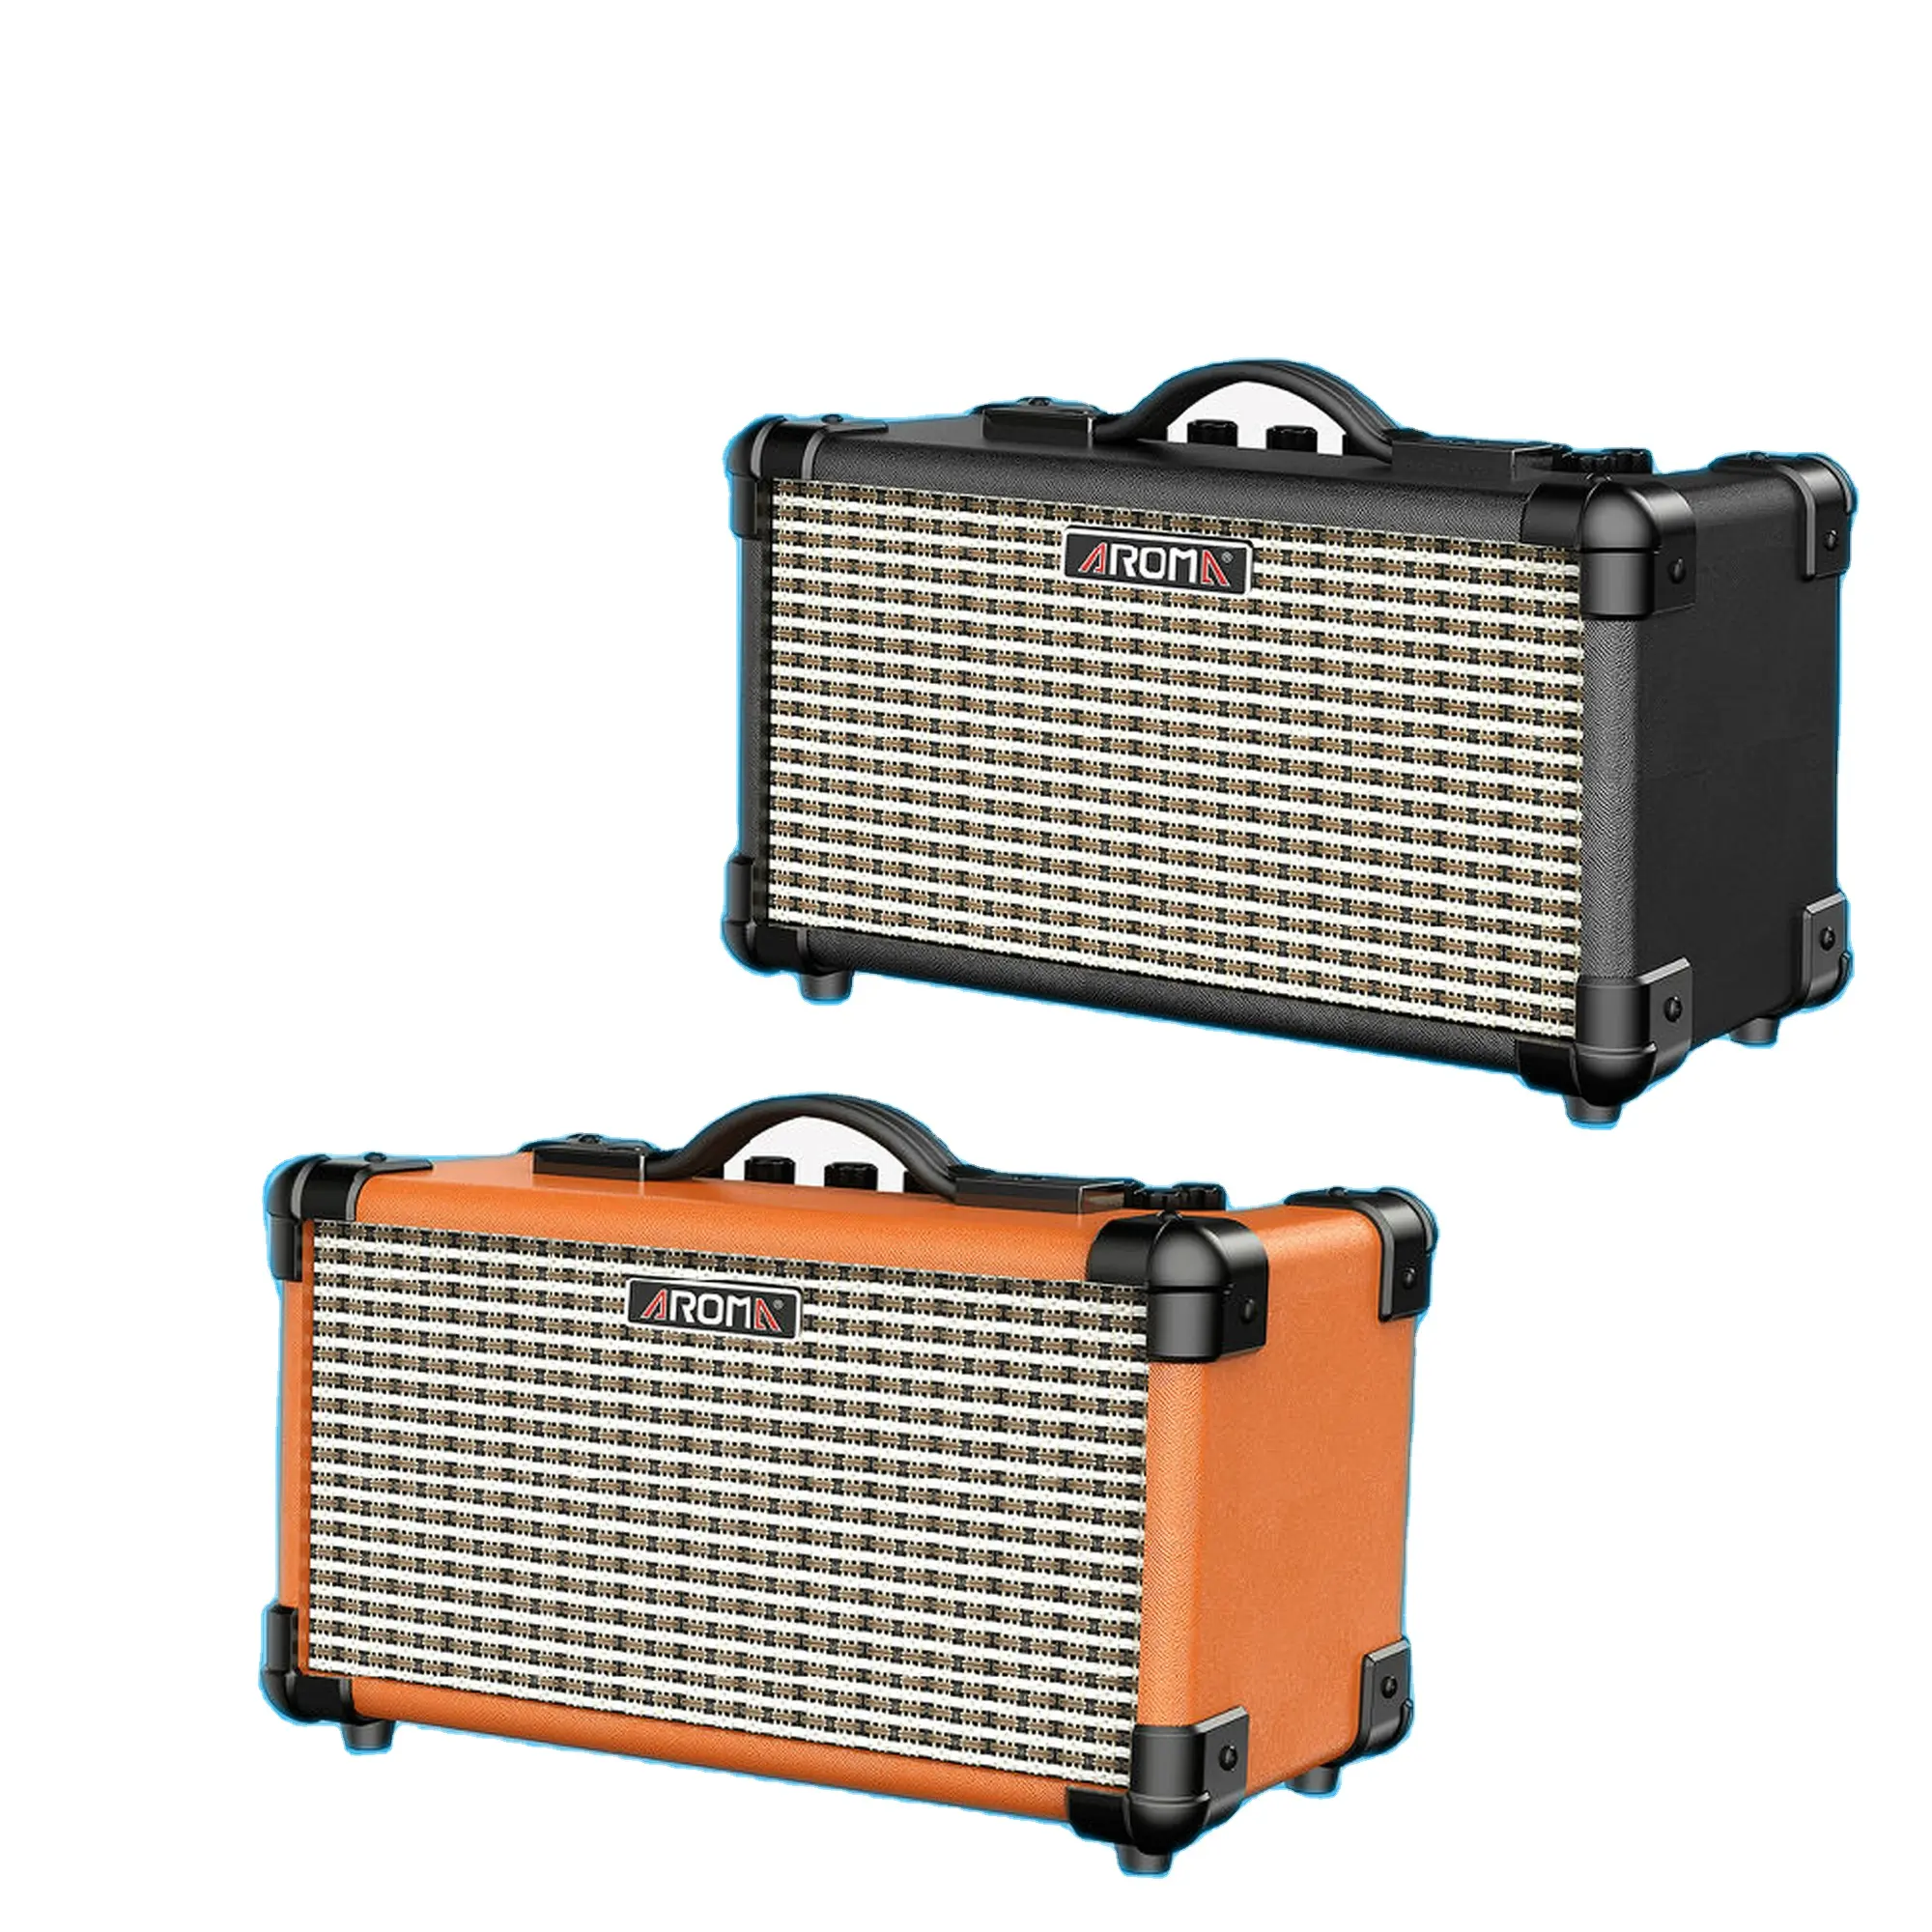 Toptan fiyat AROMA 15W taşınabilir Amp mikrofon arayüzü dahili şarj edilebilir pil elektrik gitar için